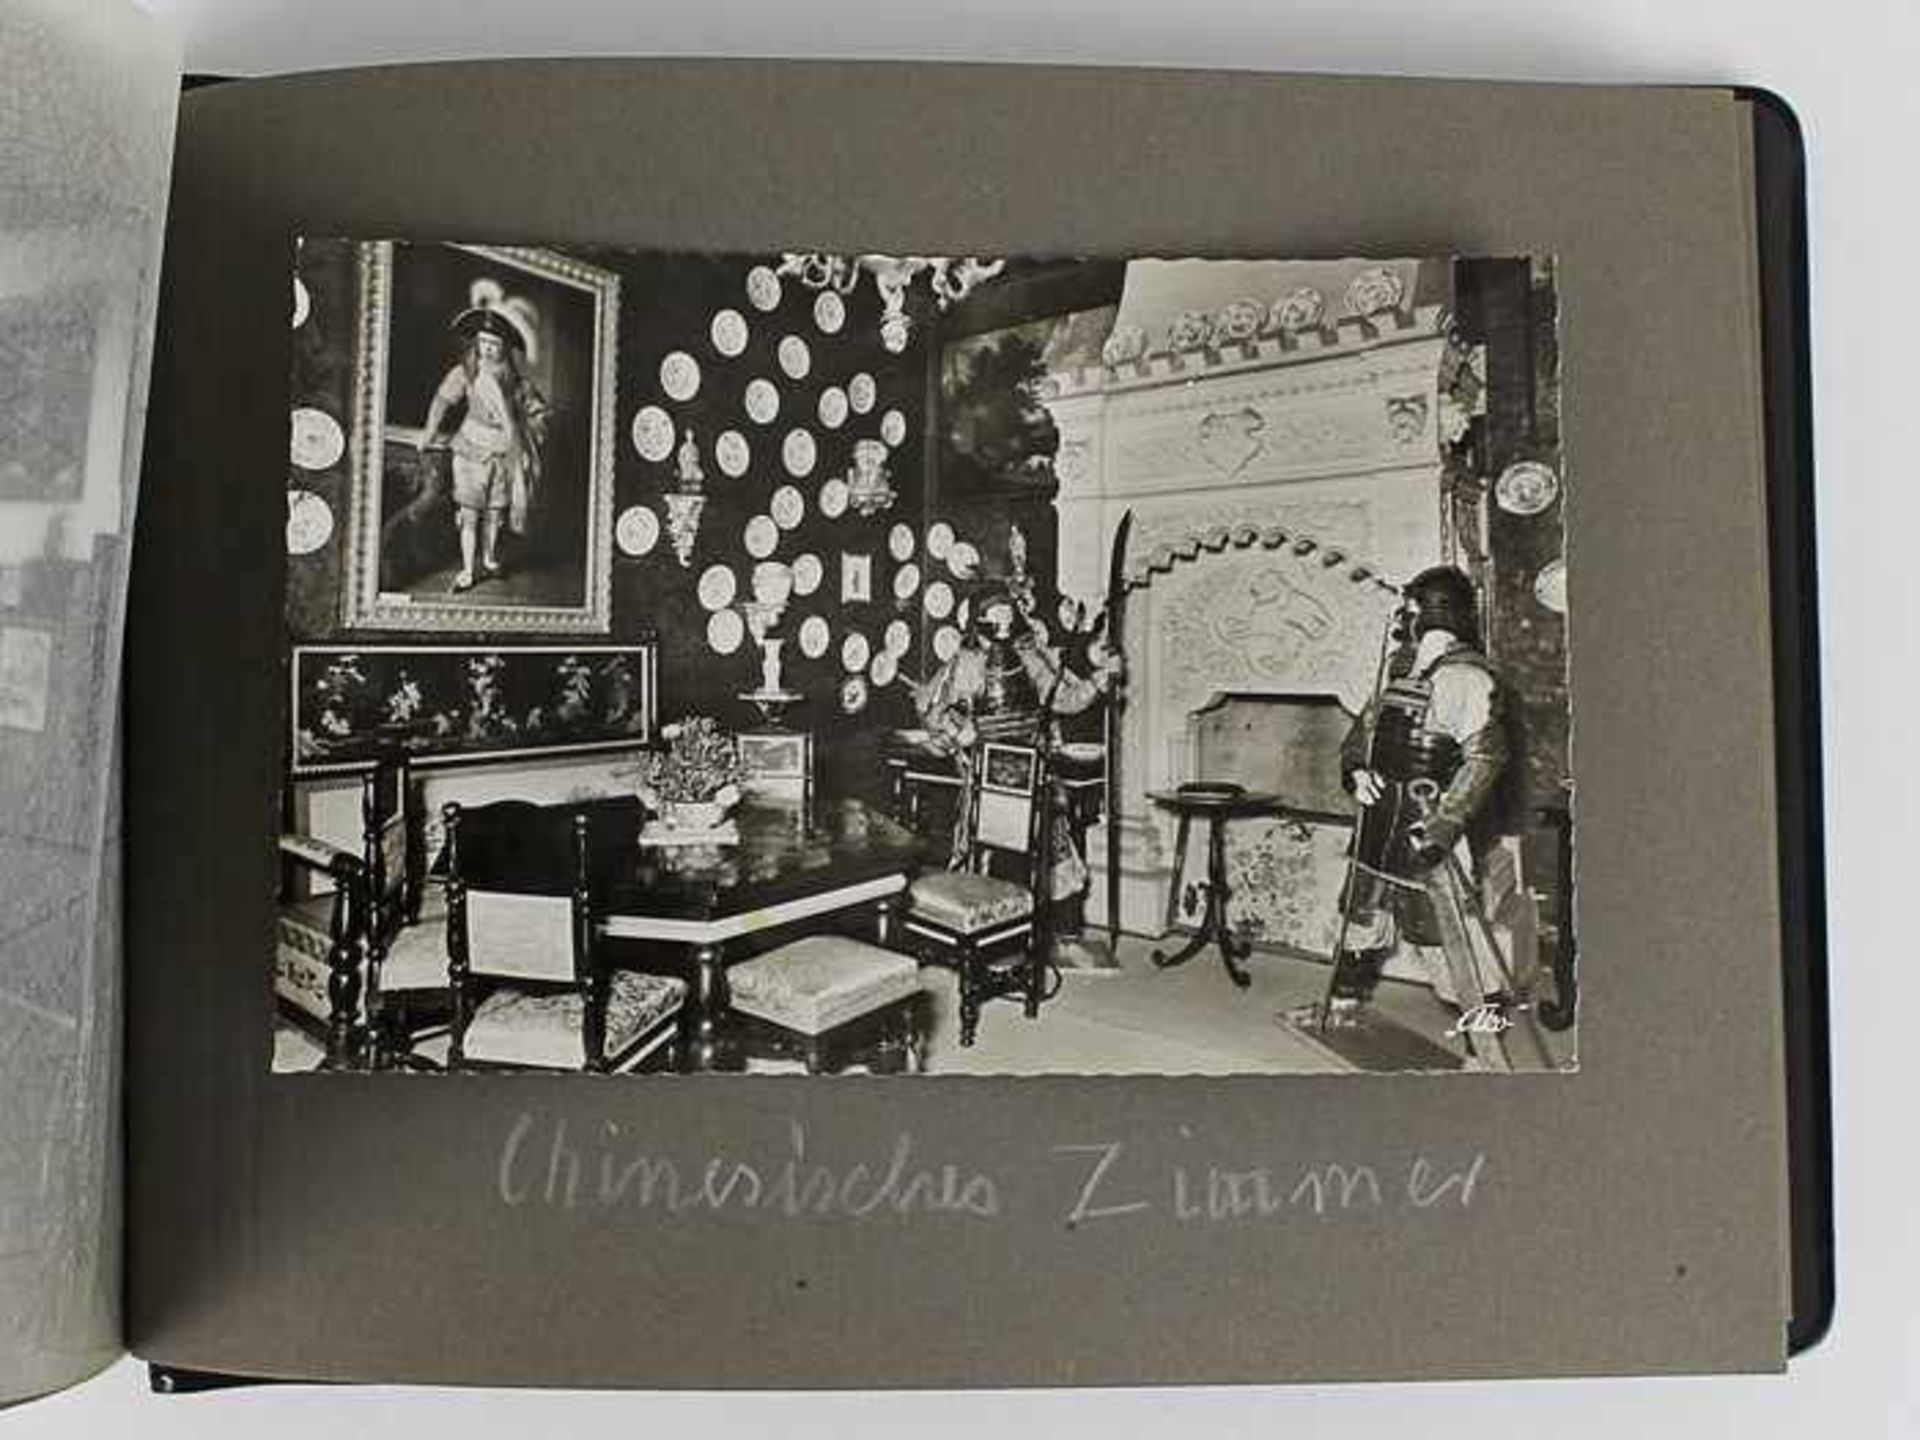 Postkartenalbenab 1930-1970, 74 St., s/w u. farbig lithogr. viele Künstlerkarten, in 2 Alben, einige - Bild 3 aus 4